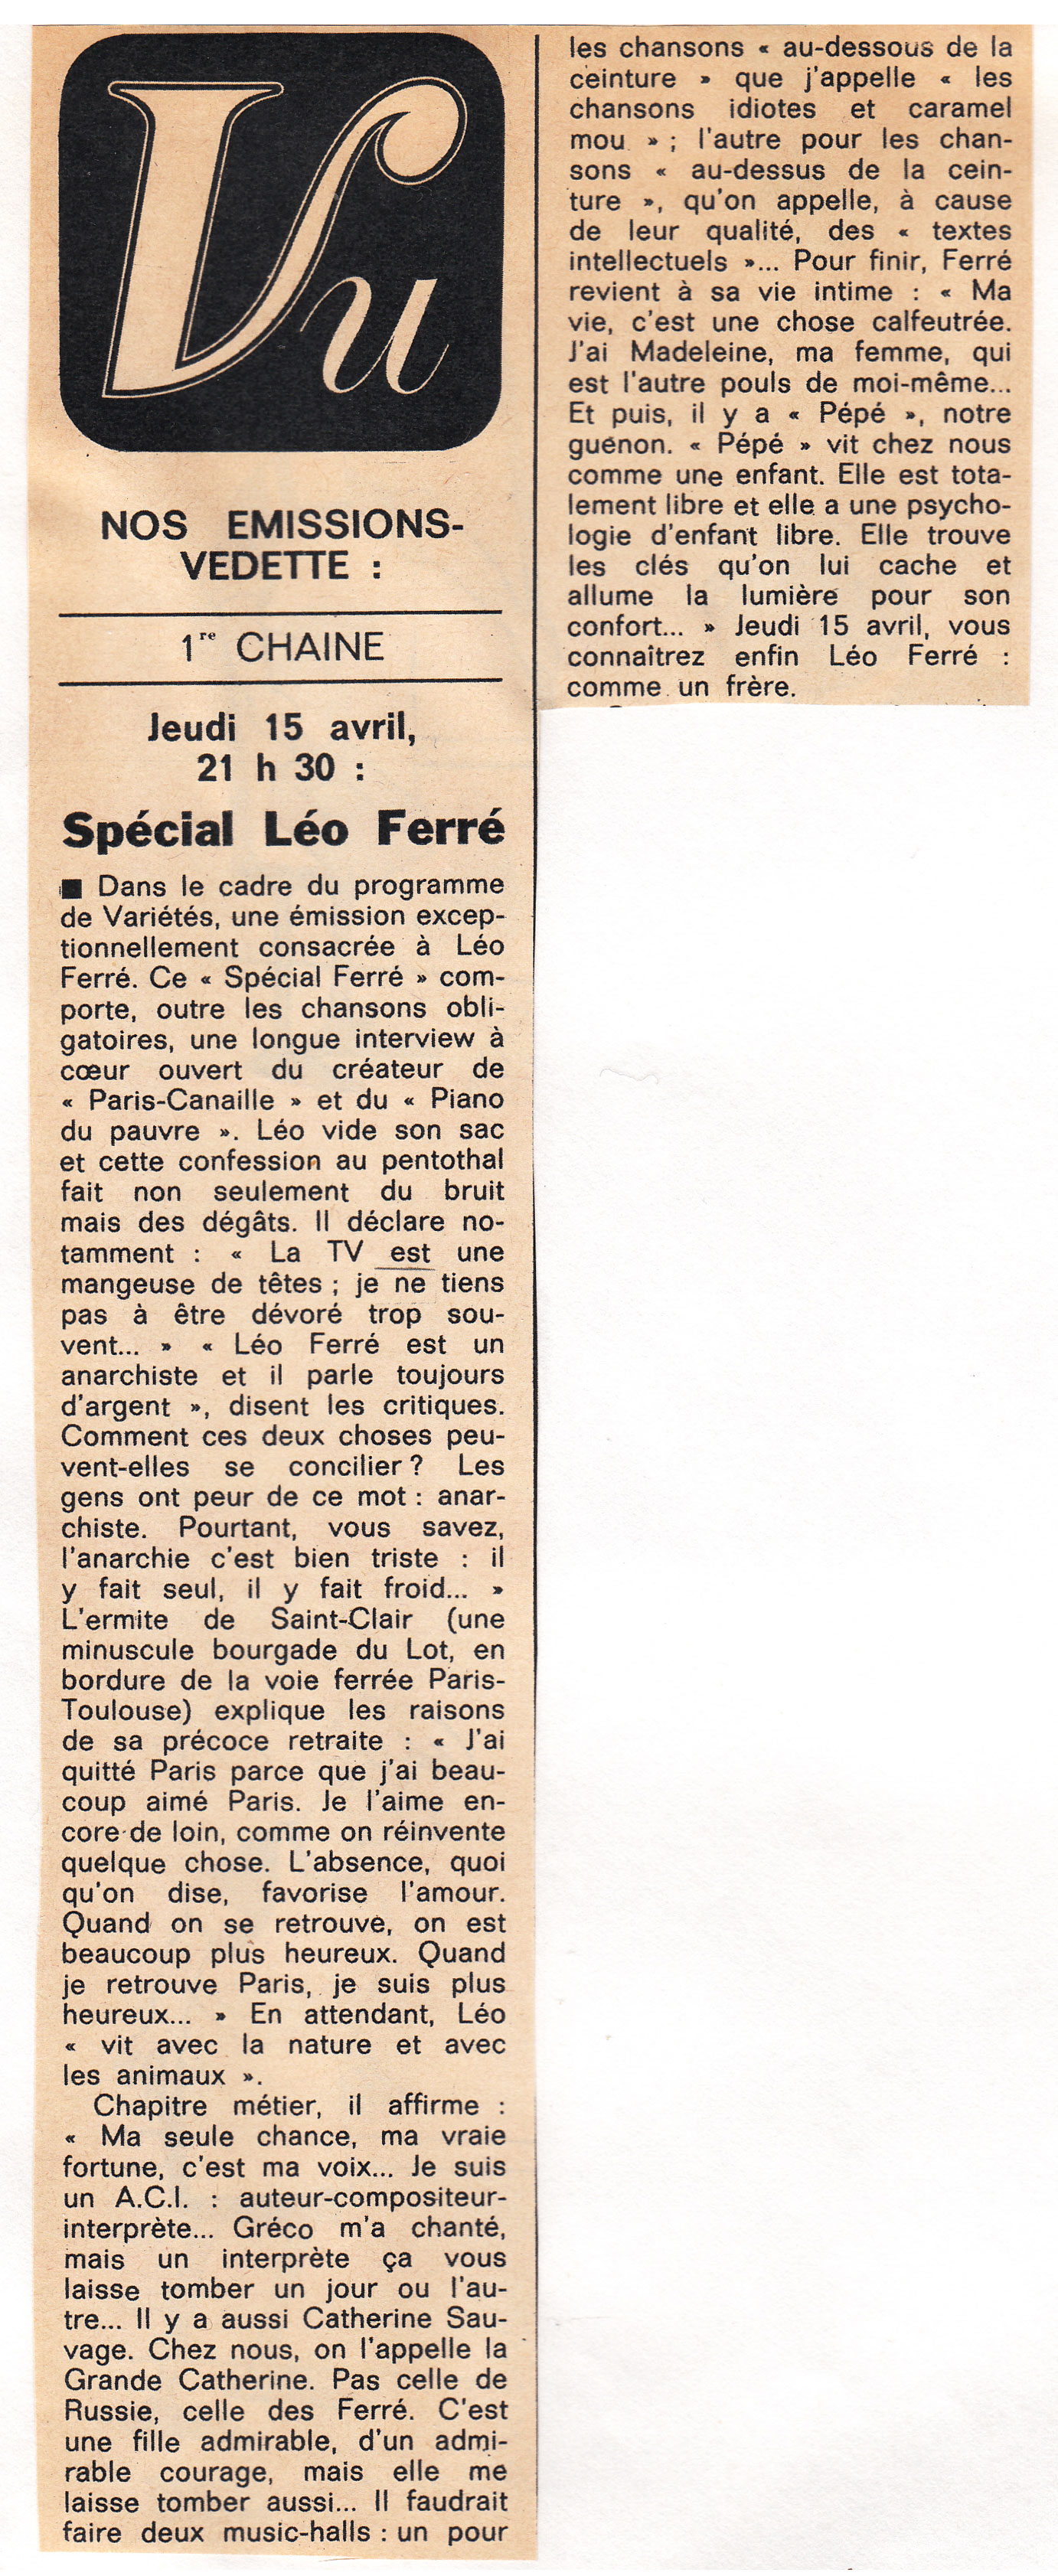 Léo Ferré - Jours de France du 17 avril 1965